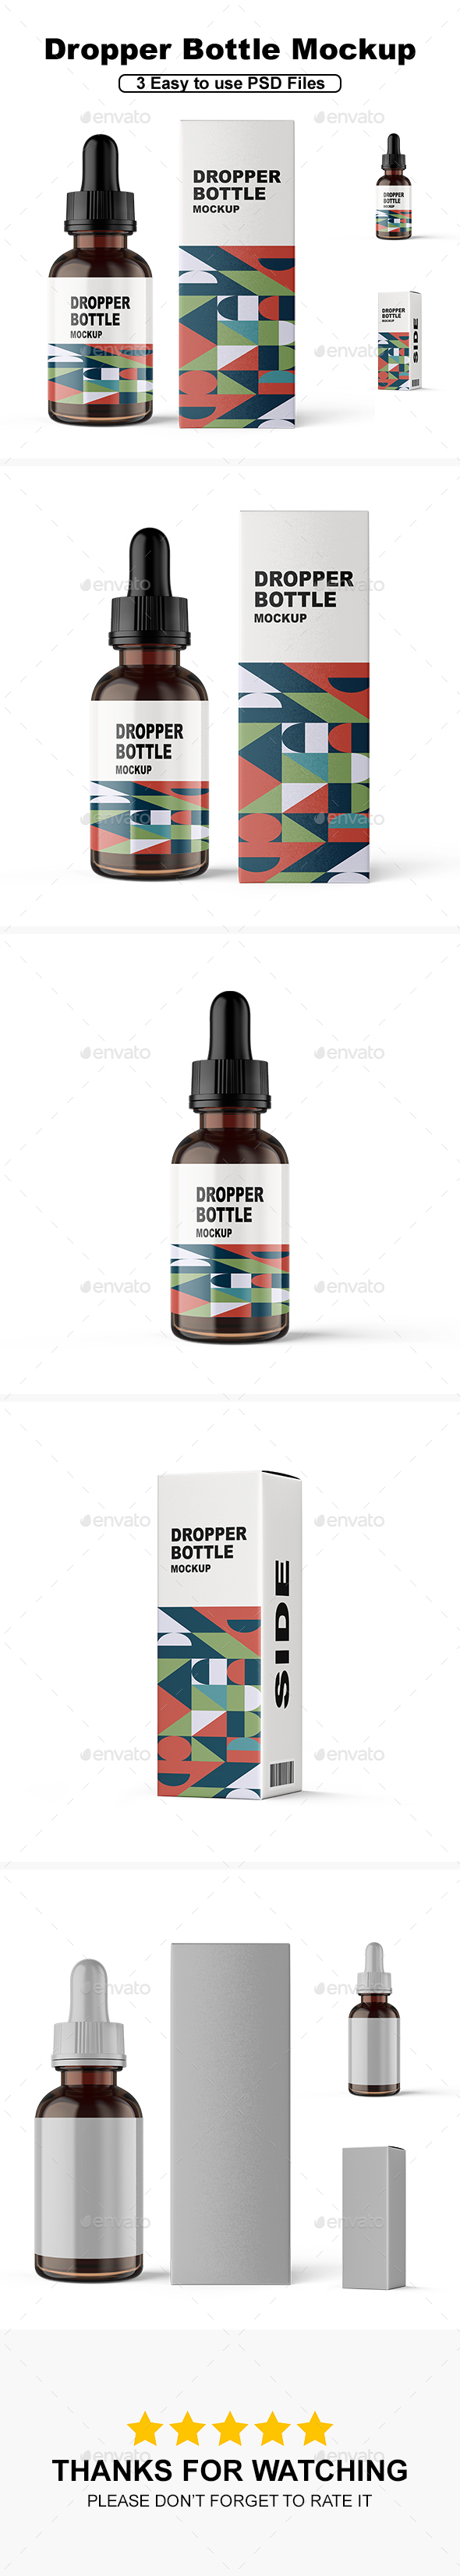 [DOWNLOAD]Dropper Bottle Mockup